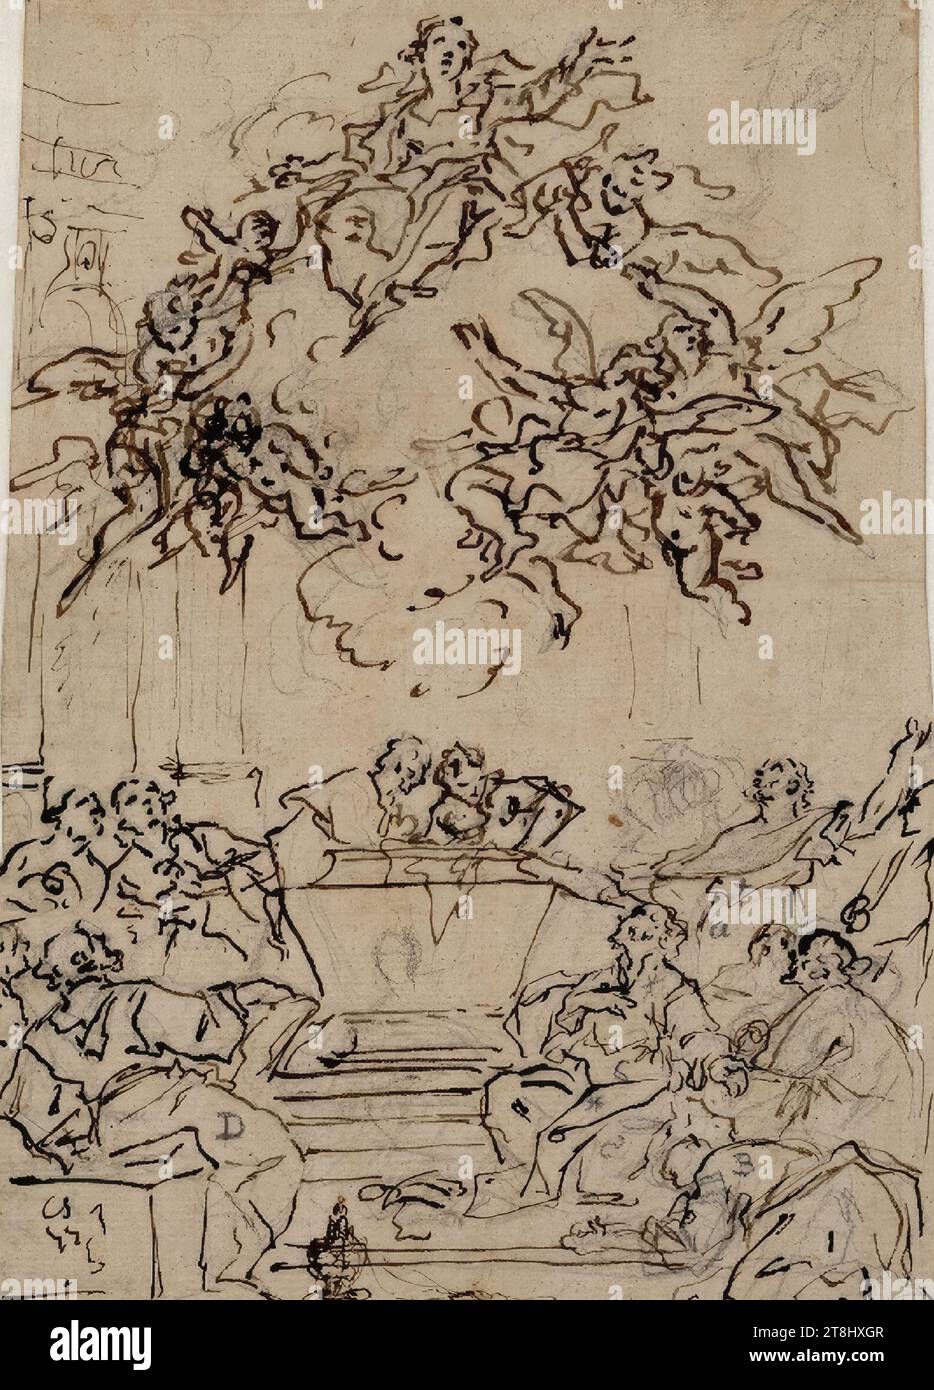 Mariae Himmelfahrt, Daniel Gran, Vienna circa 1694 - 1757 St Pölten, disegno, penna al piombo, penna con inchiostro, 42,2 x 17,3 cm, Austria Foto Stock